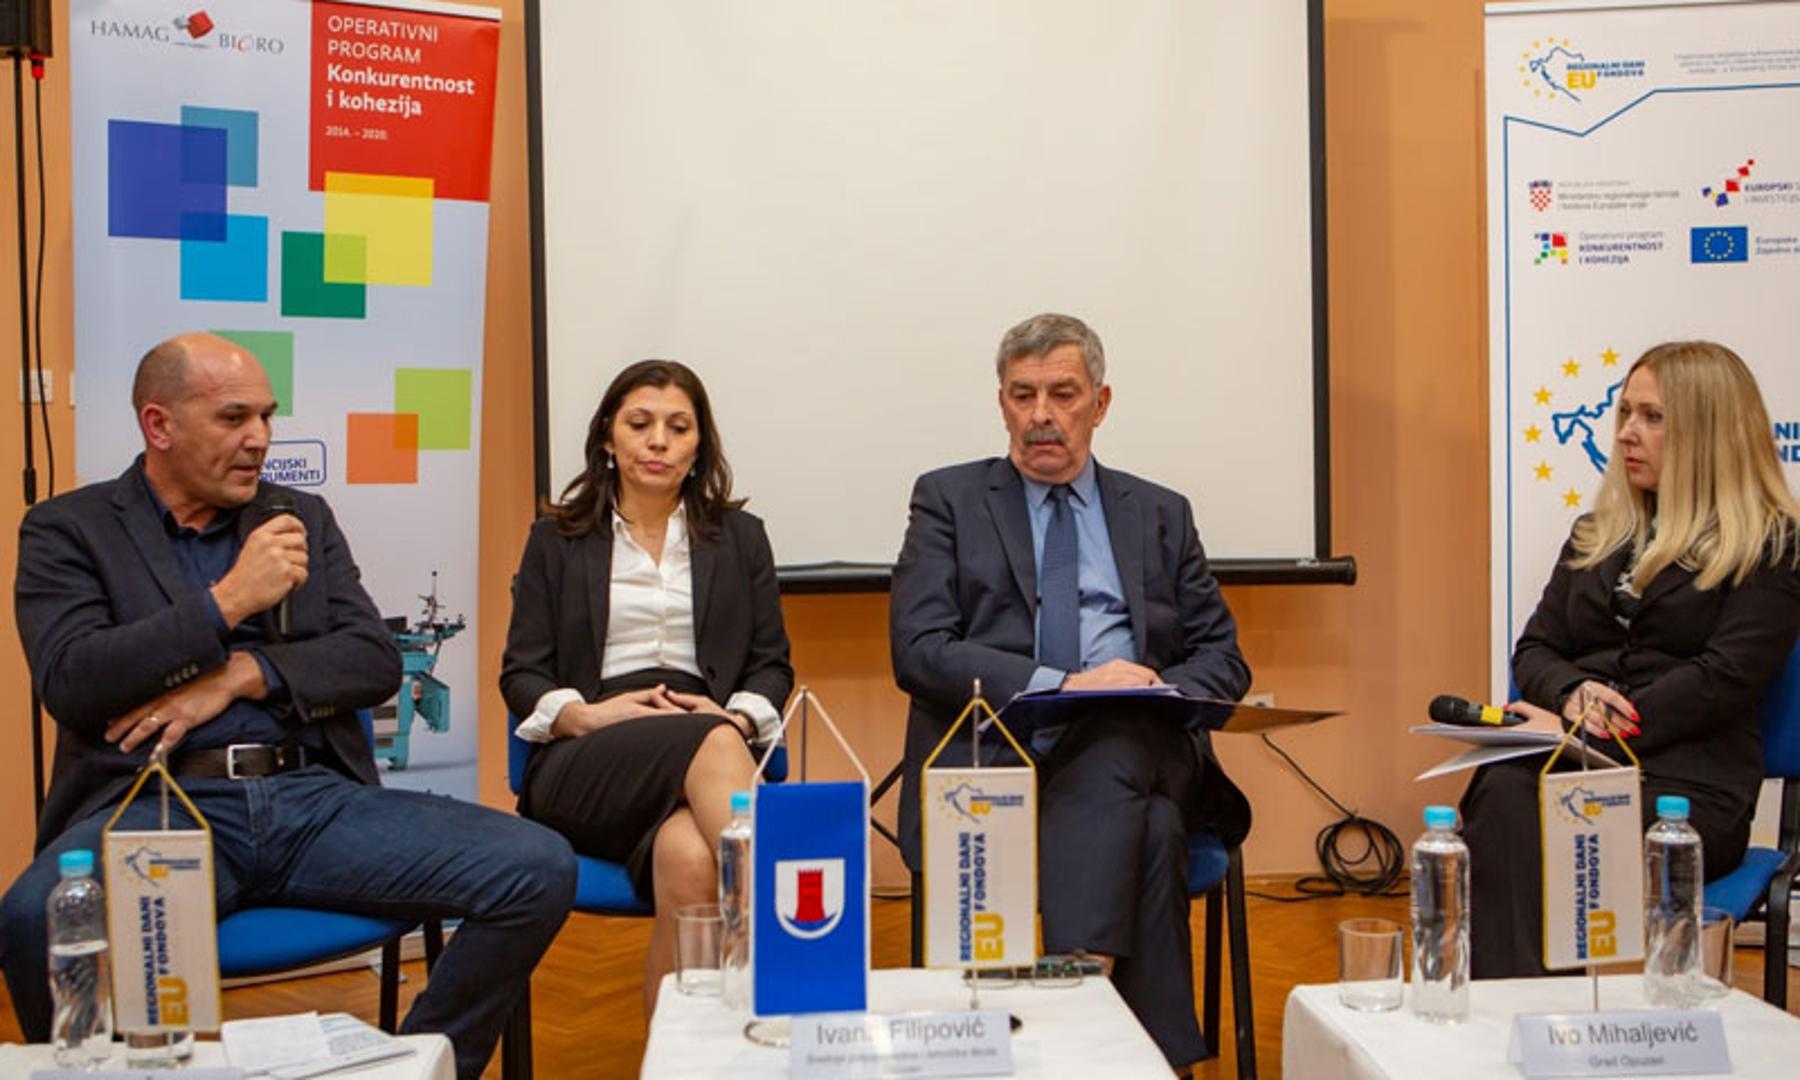 Na panel raspravi o razvoju Opuzena kroz EU fondove sudjelovali su Mihovil Štimac, Ivana Filipović i gradonačelnik Opuzena Ivo Mihaljević